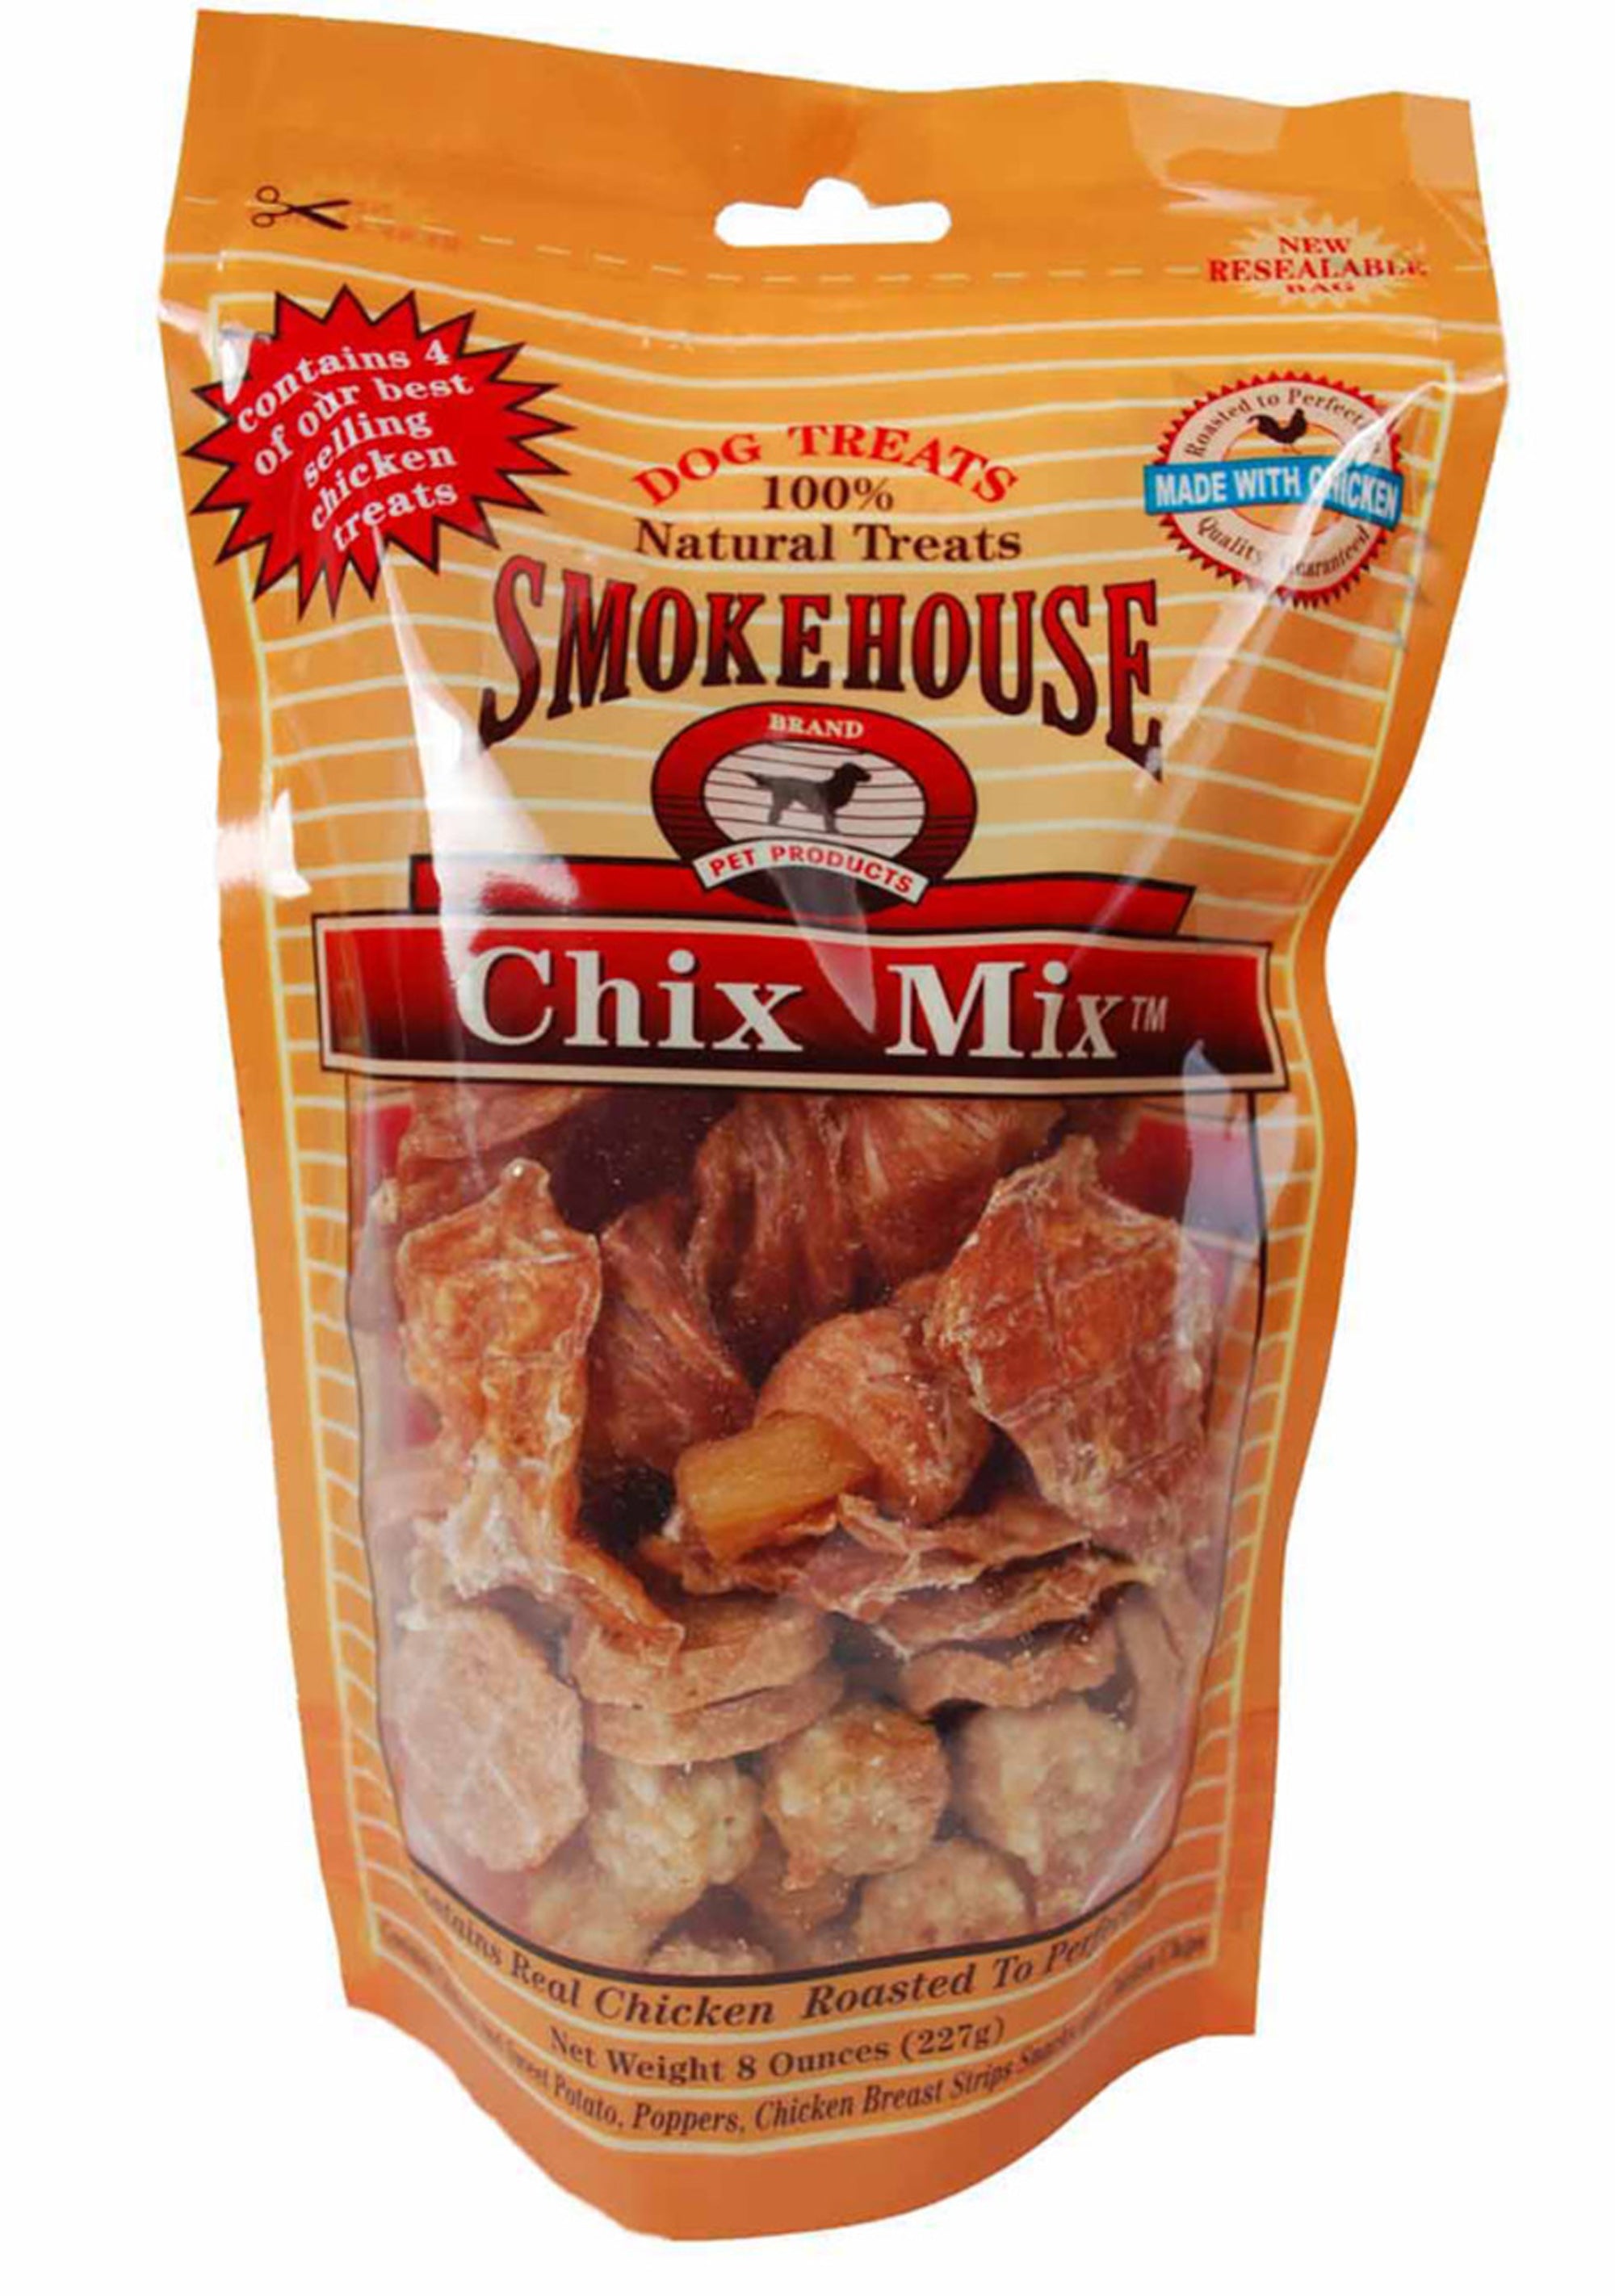 Smokehouse Chix Mix Dog Treats 8 oz